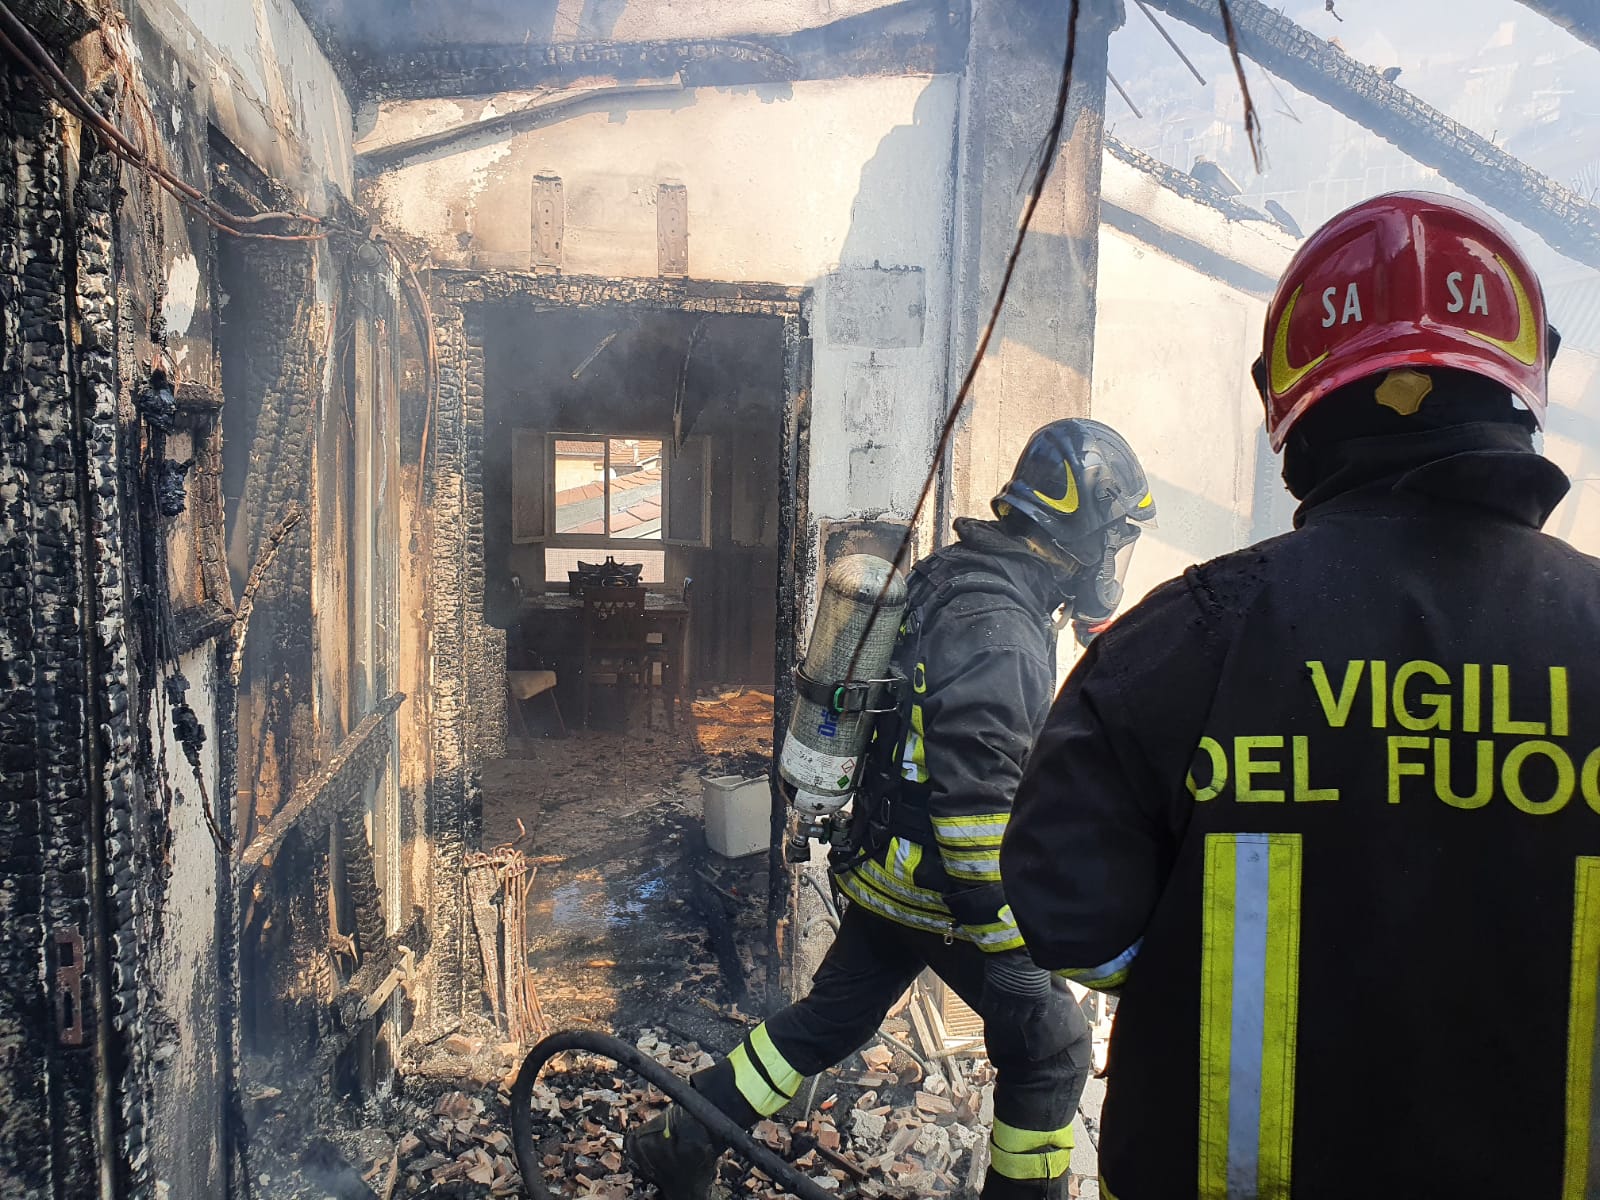 Sala Consilina, mansarda distrutta dalle fiamme: un ferito